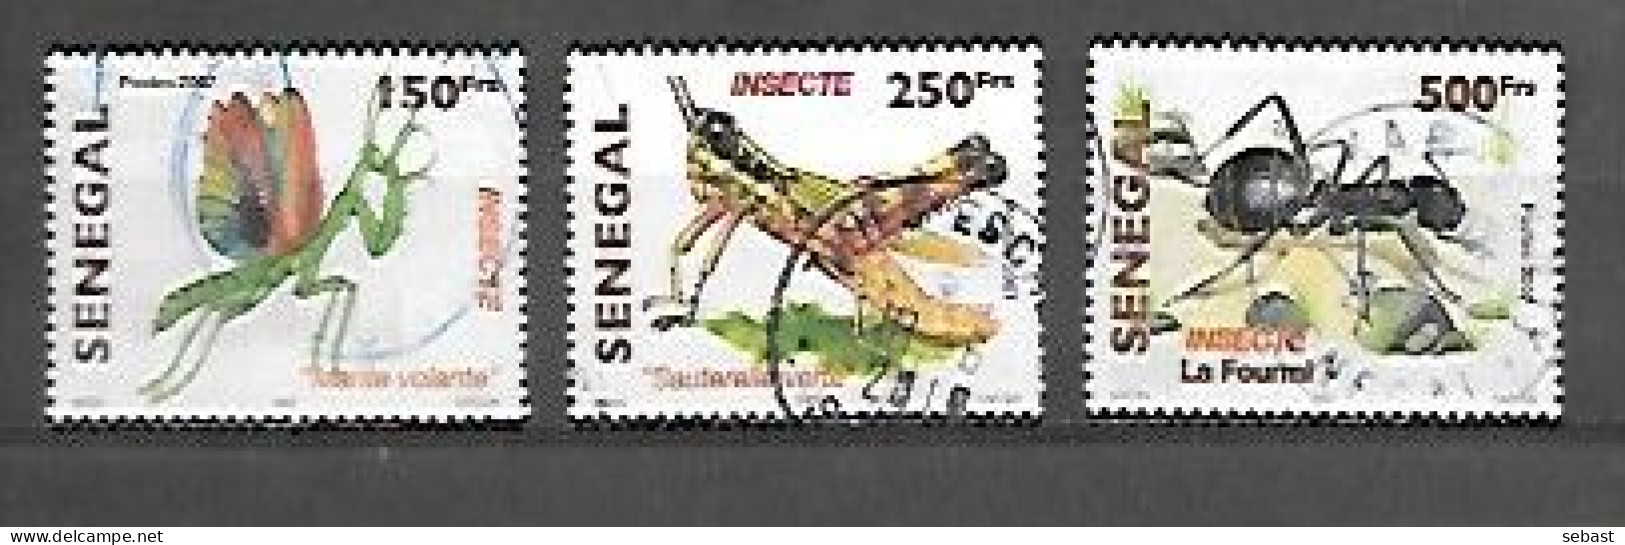 TIMBRE OBLITERE DU SENEGAL DE 2010 N° MICHEL 2162 2164/65 - Sénégal (1960-...)